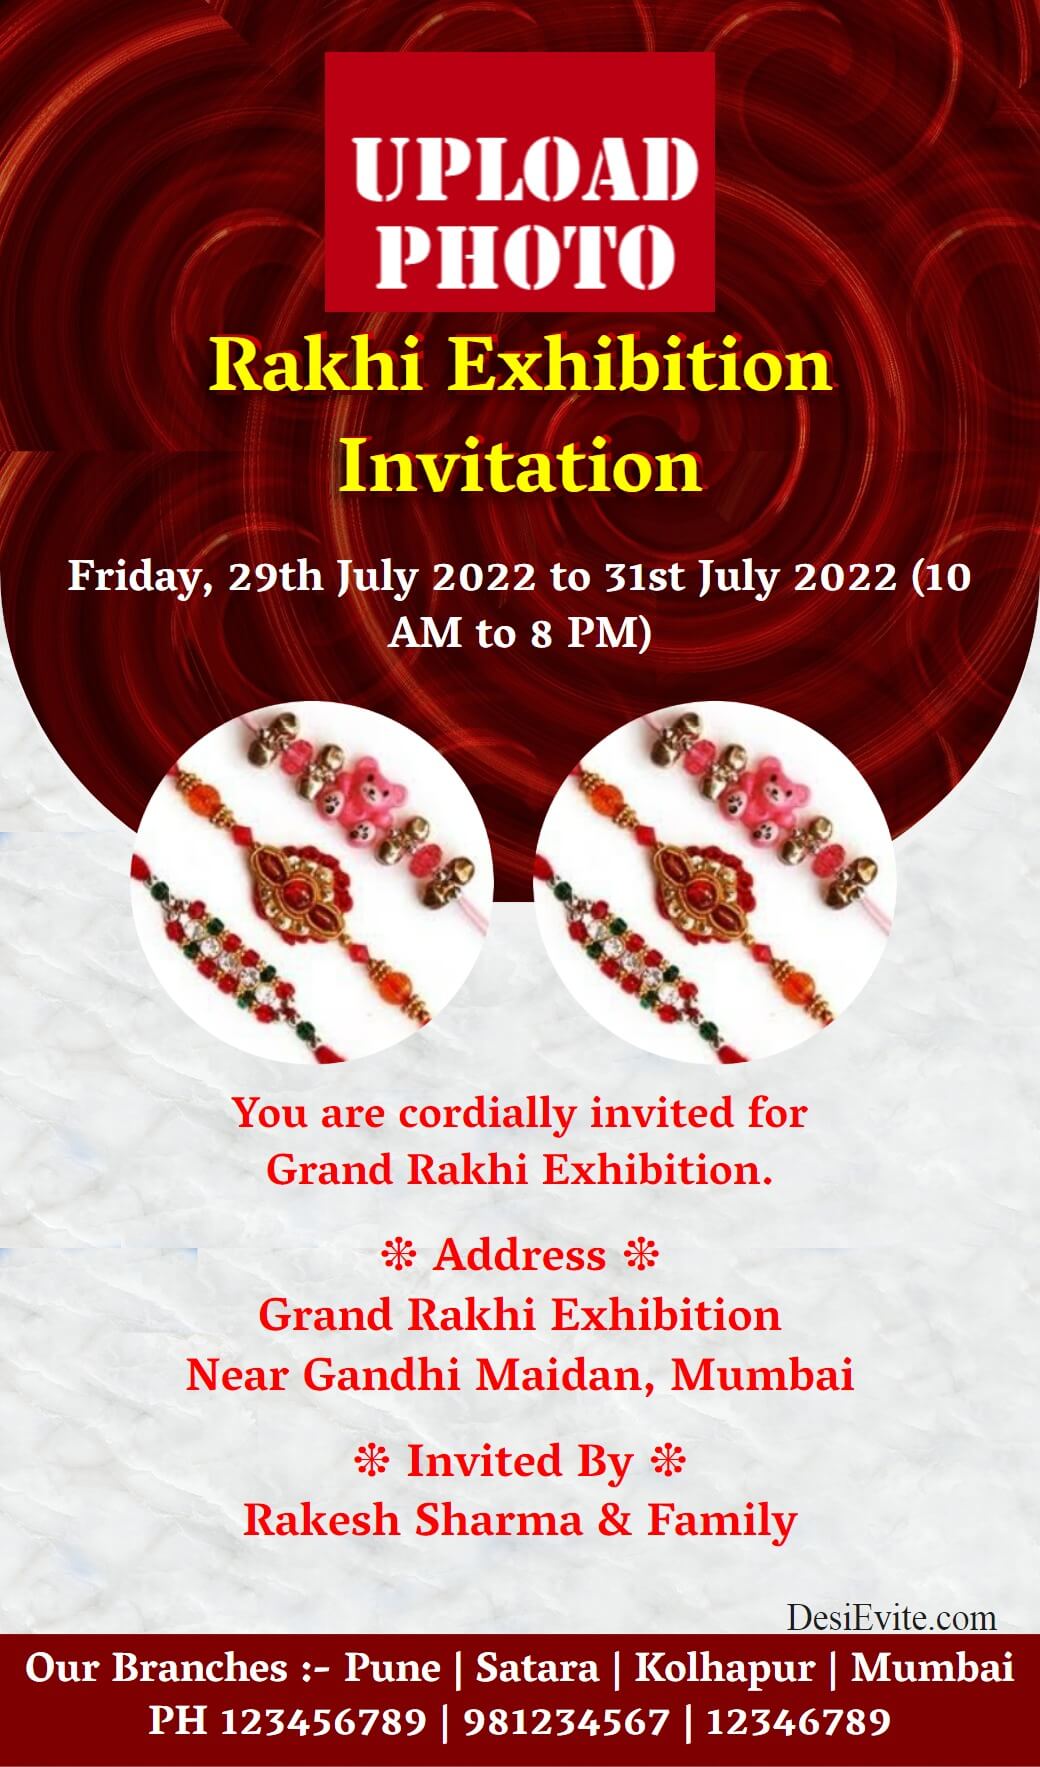 rakhi-exhibition-card-3-photo-upload